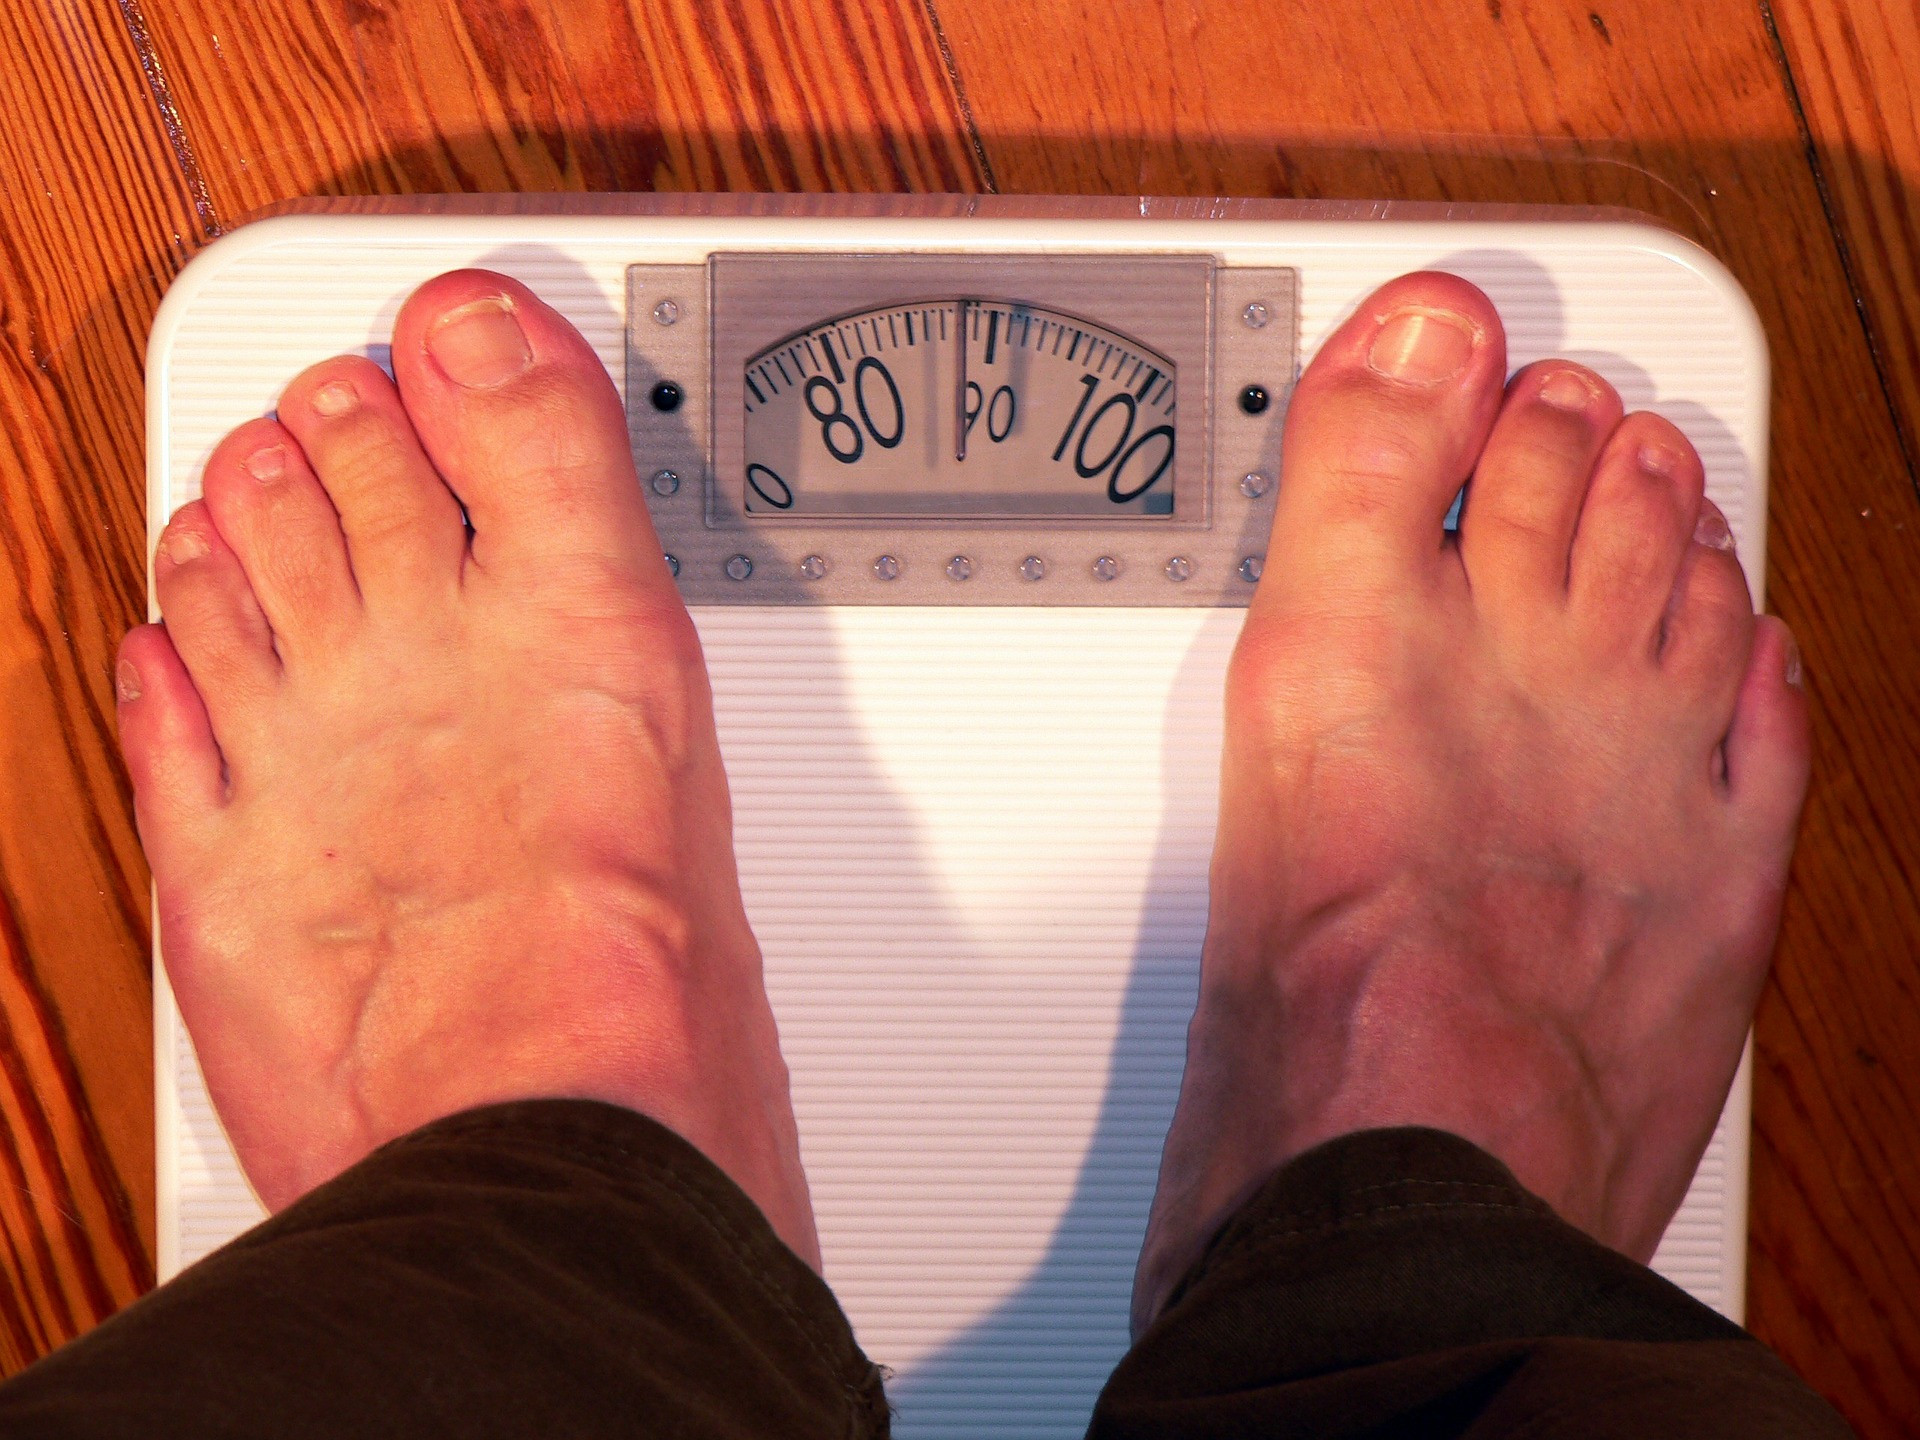 Vyše stovka výskumov v roku 2013 prišla nato, že obézni ľudia, ktorí majú čísla BMI 35 alebo vyššie, sa stretávajú s rizikom úmrtia vyšším o 29 percent, ako jedinci s normálnou hmotnosťou. Táto správa tiež prišla k šokujúcemu odhaleniu: ľudia, ktorí majú nadváhu (nie obezitu), môžu žiť dlhšie ako tí, ktorí majú normálnou hmotnosť. Napriek tomu sa netreba touto správou riadiť. Nadváha stále zvyšuje riziko chronických ochorení, ako sú srdcové choroby a diabetes 2. typu.